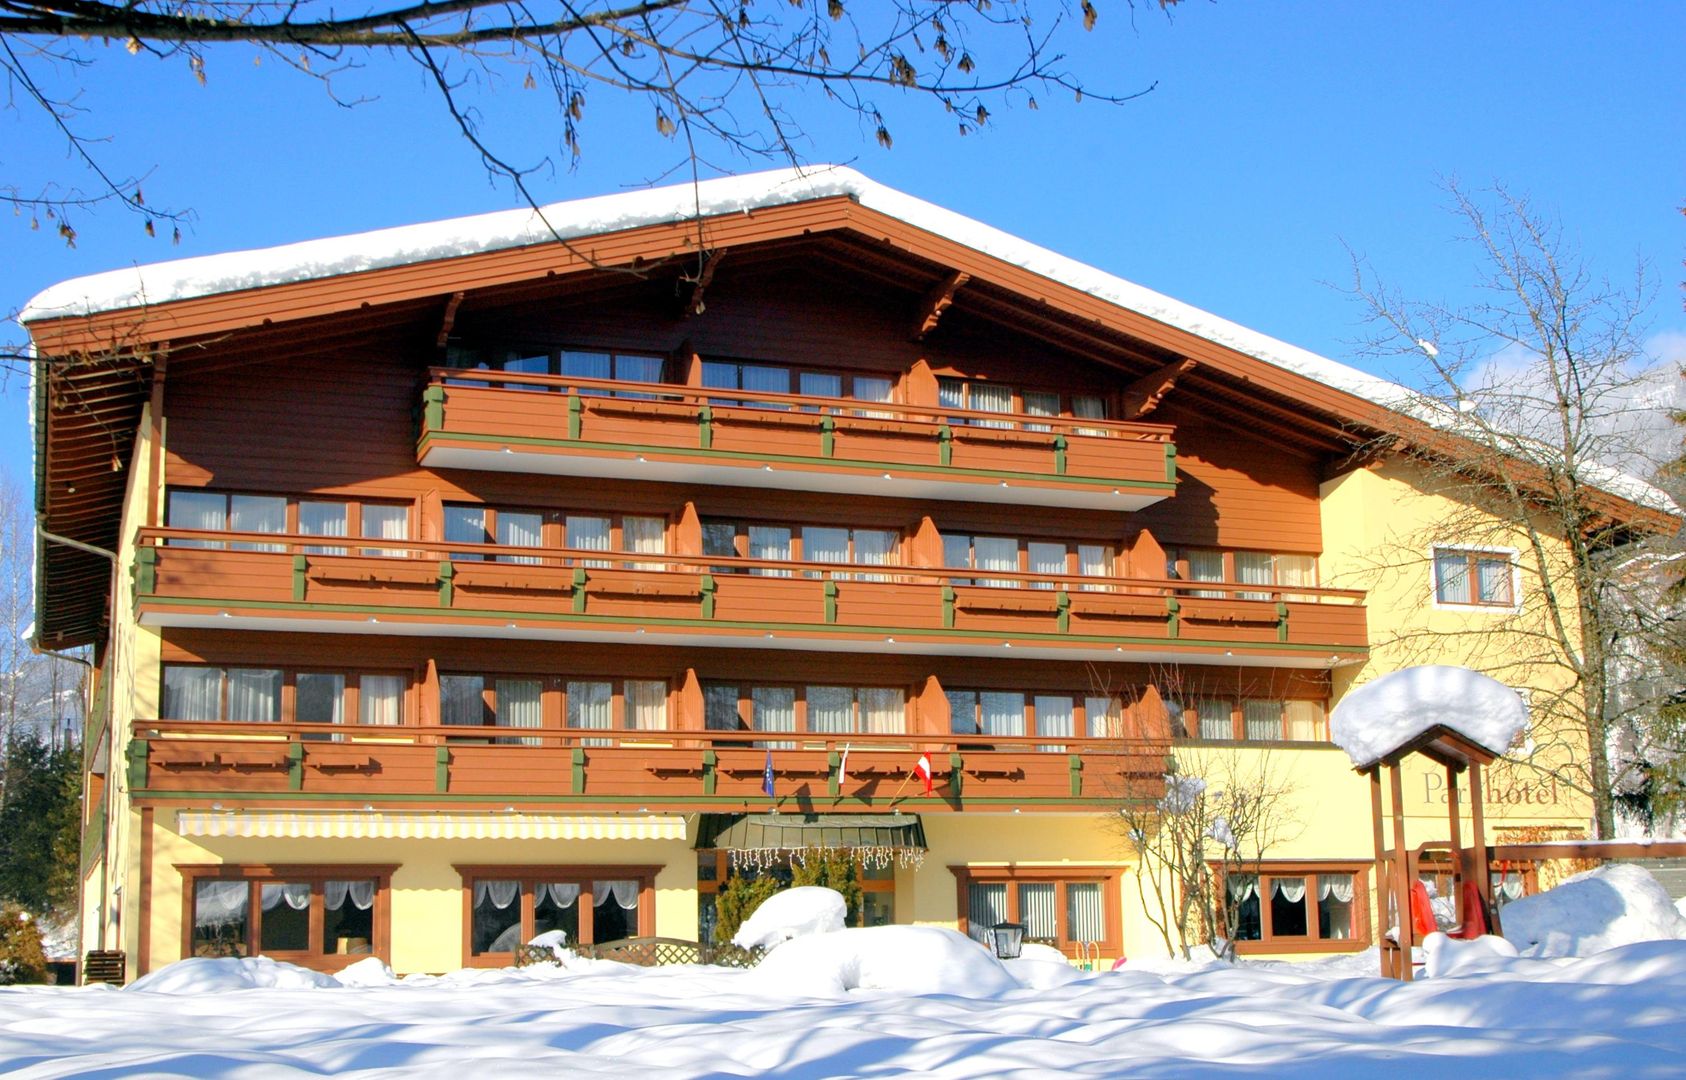 Meer info over Parkhotel Kirchberg  bij Wintertrex